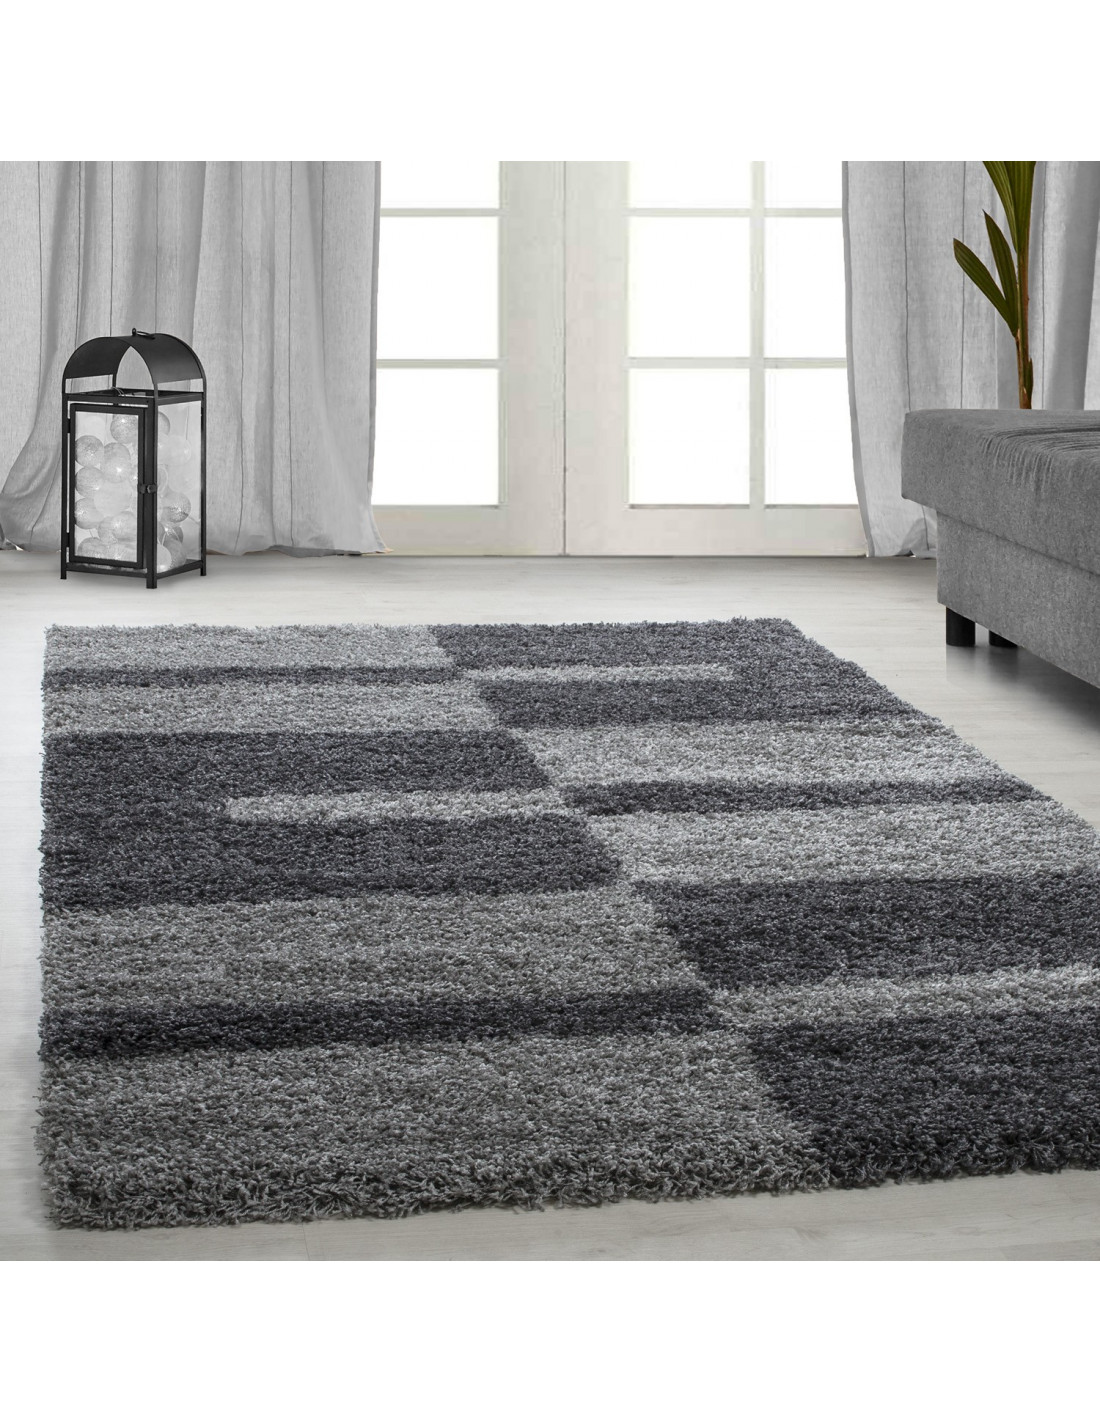 Hoogpolig hoogpolig woonkamer GALA Hoogpolig tapijt, poolhoogte 3 cm grijs-lichtgrijs